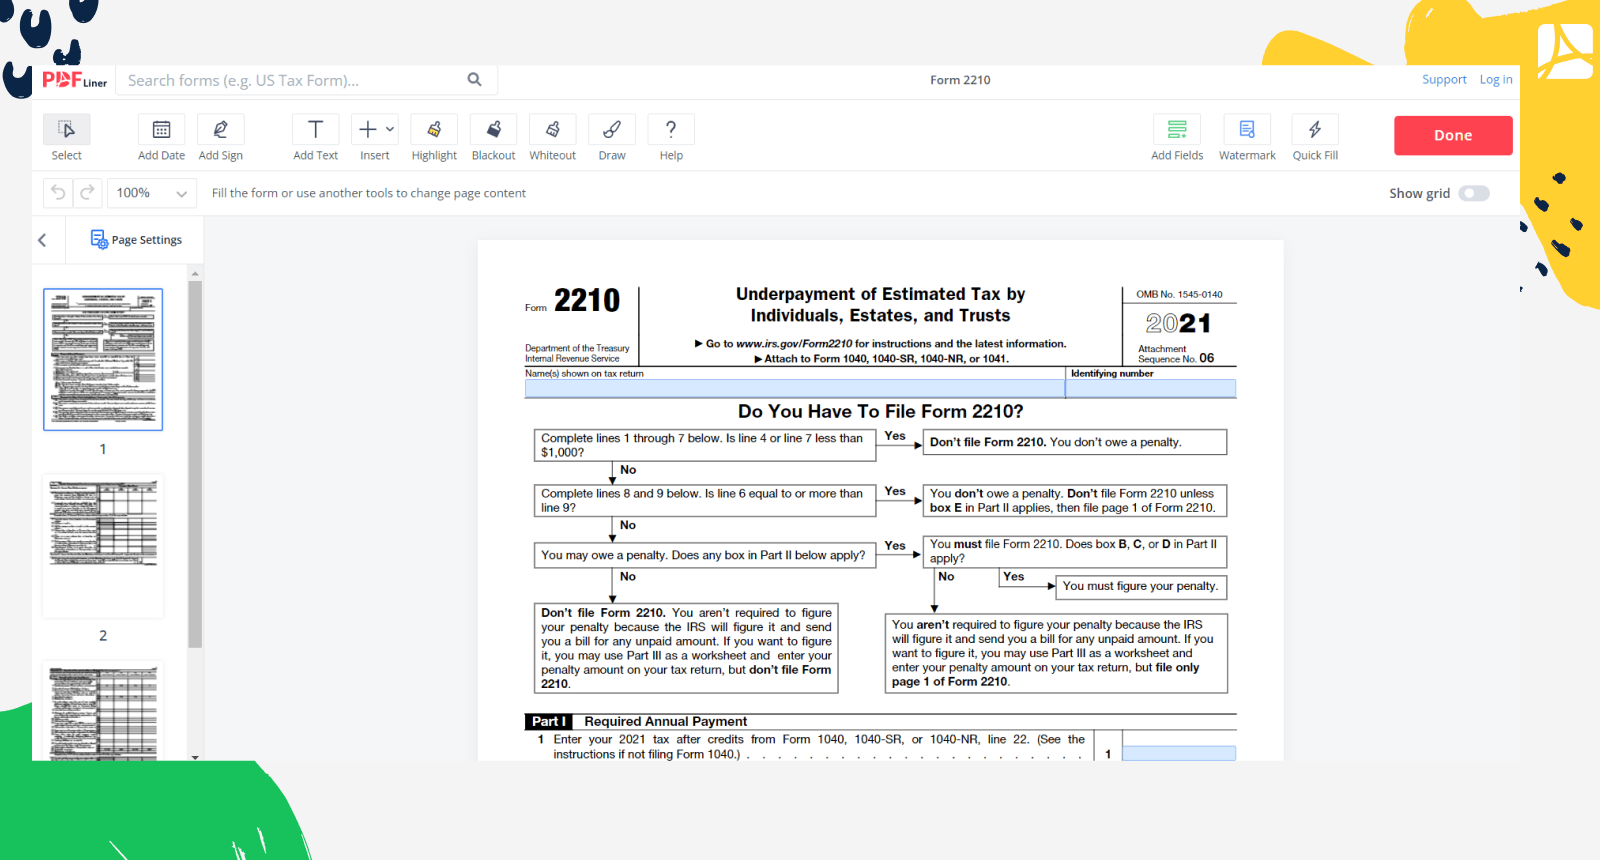 Form 2210 on PDFLiner